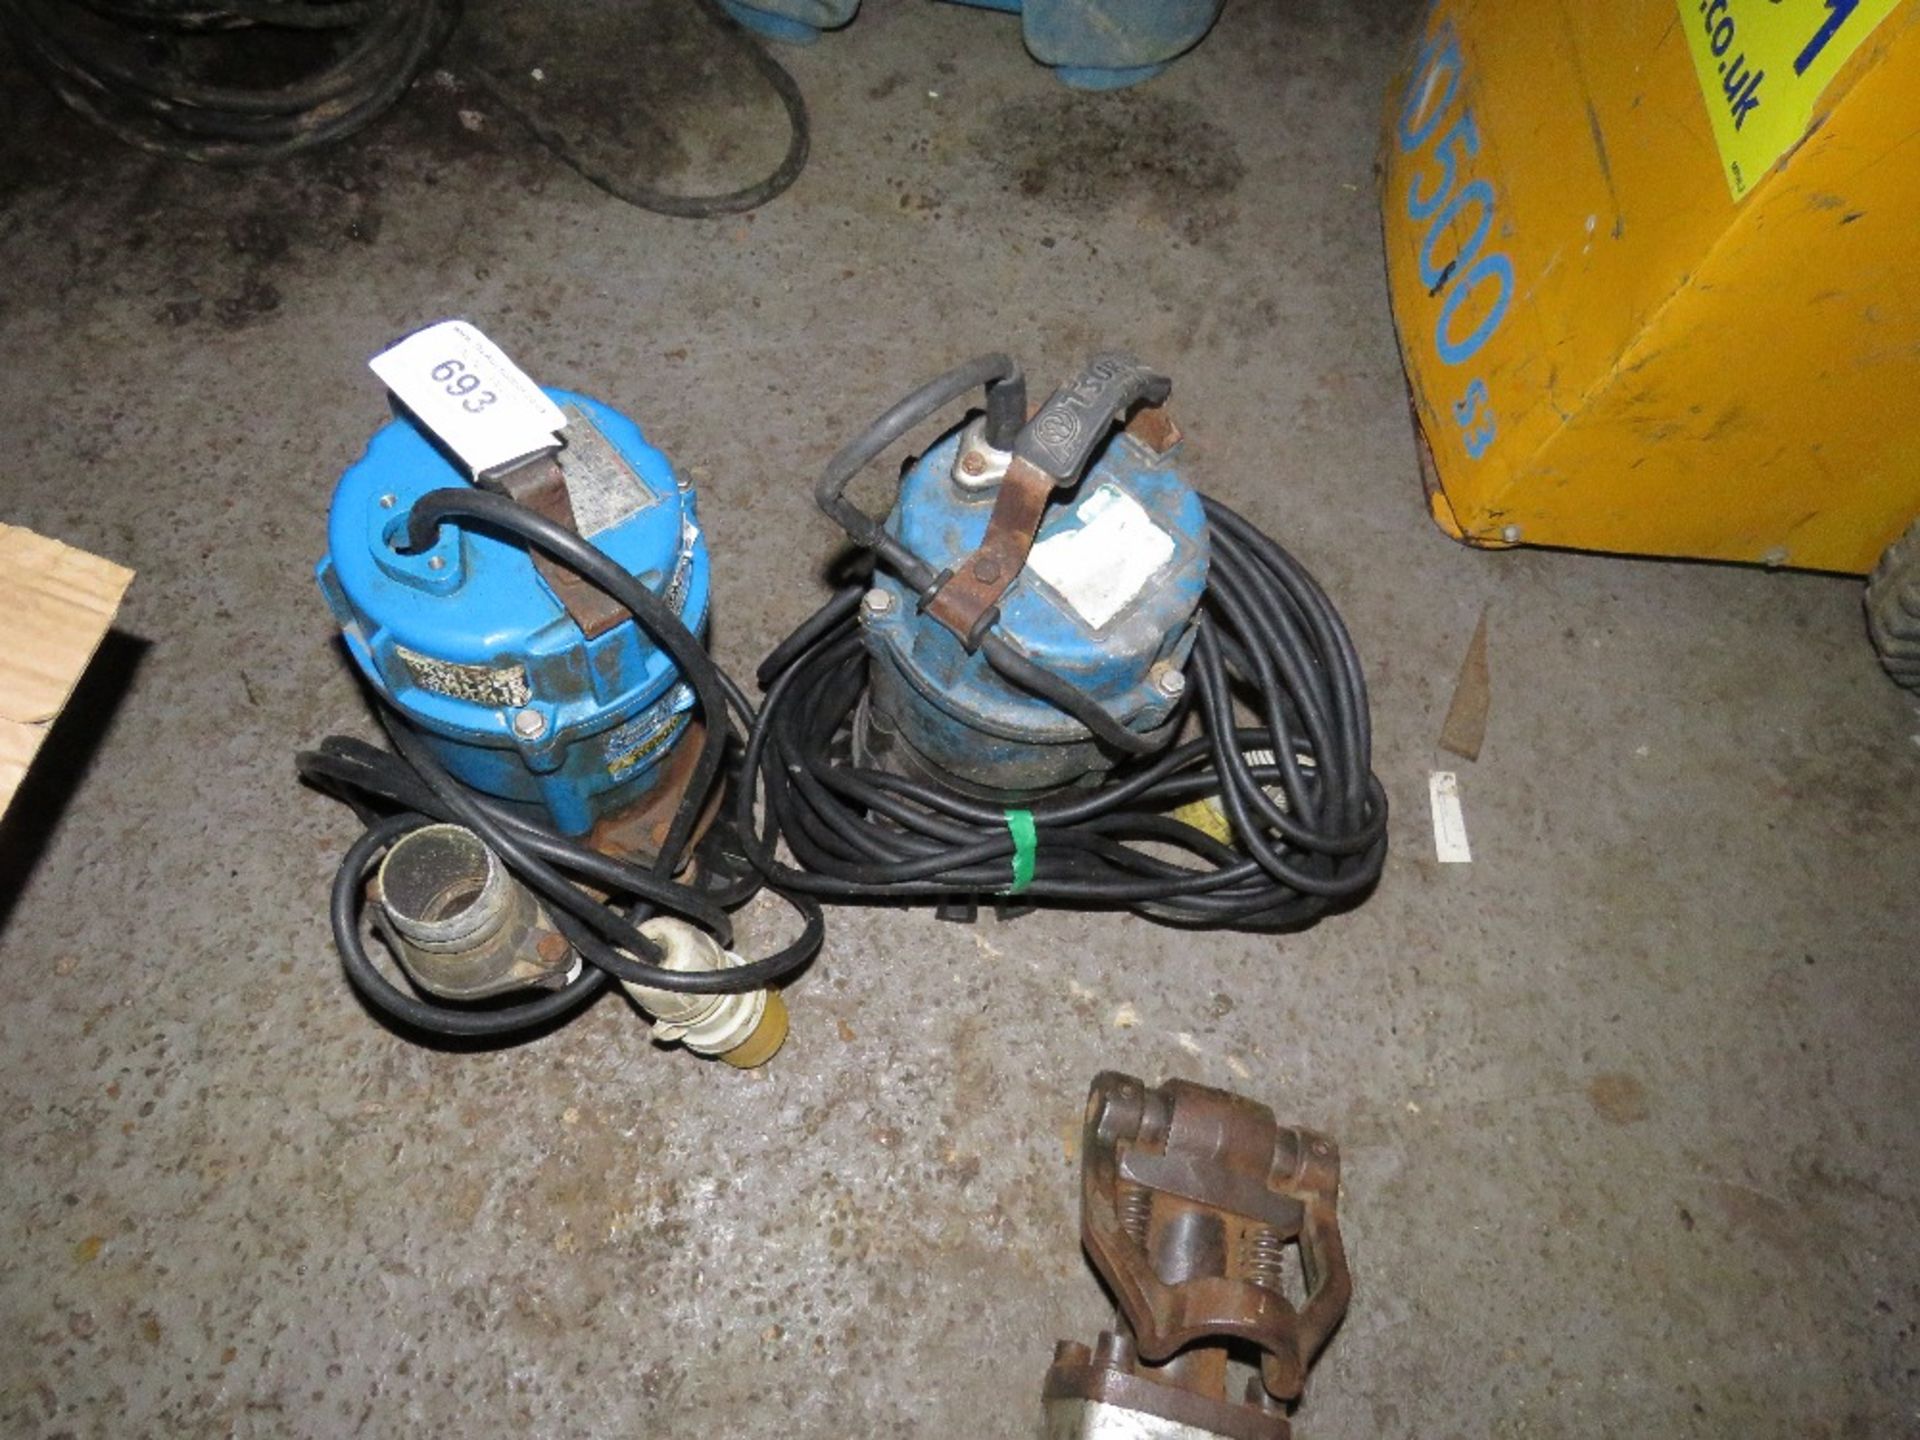 2no. 110v Sub pumps